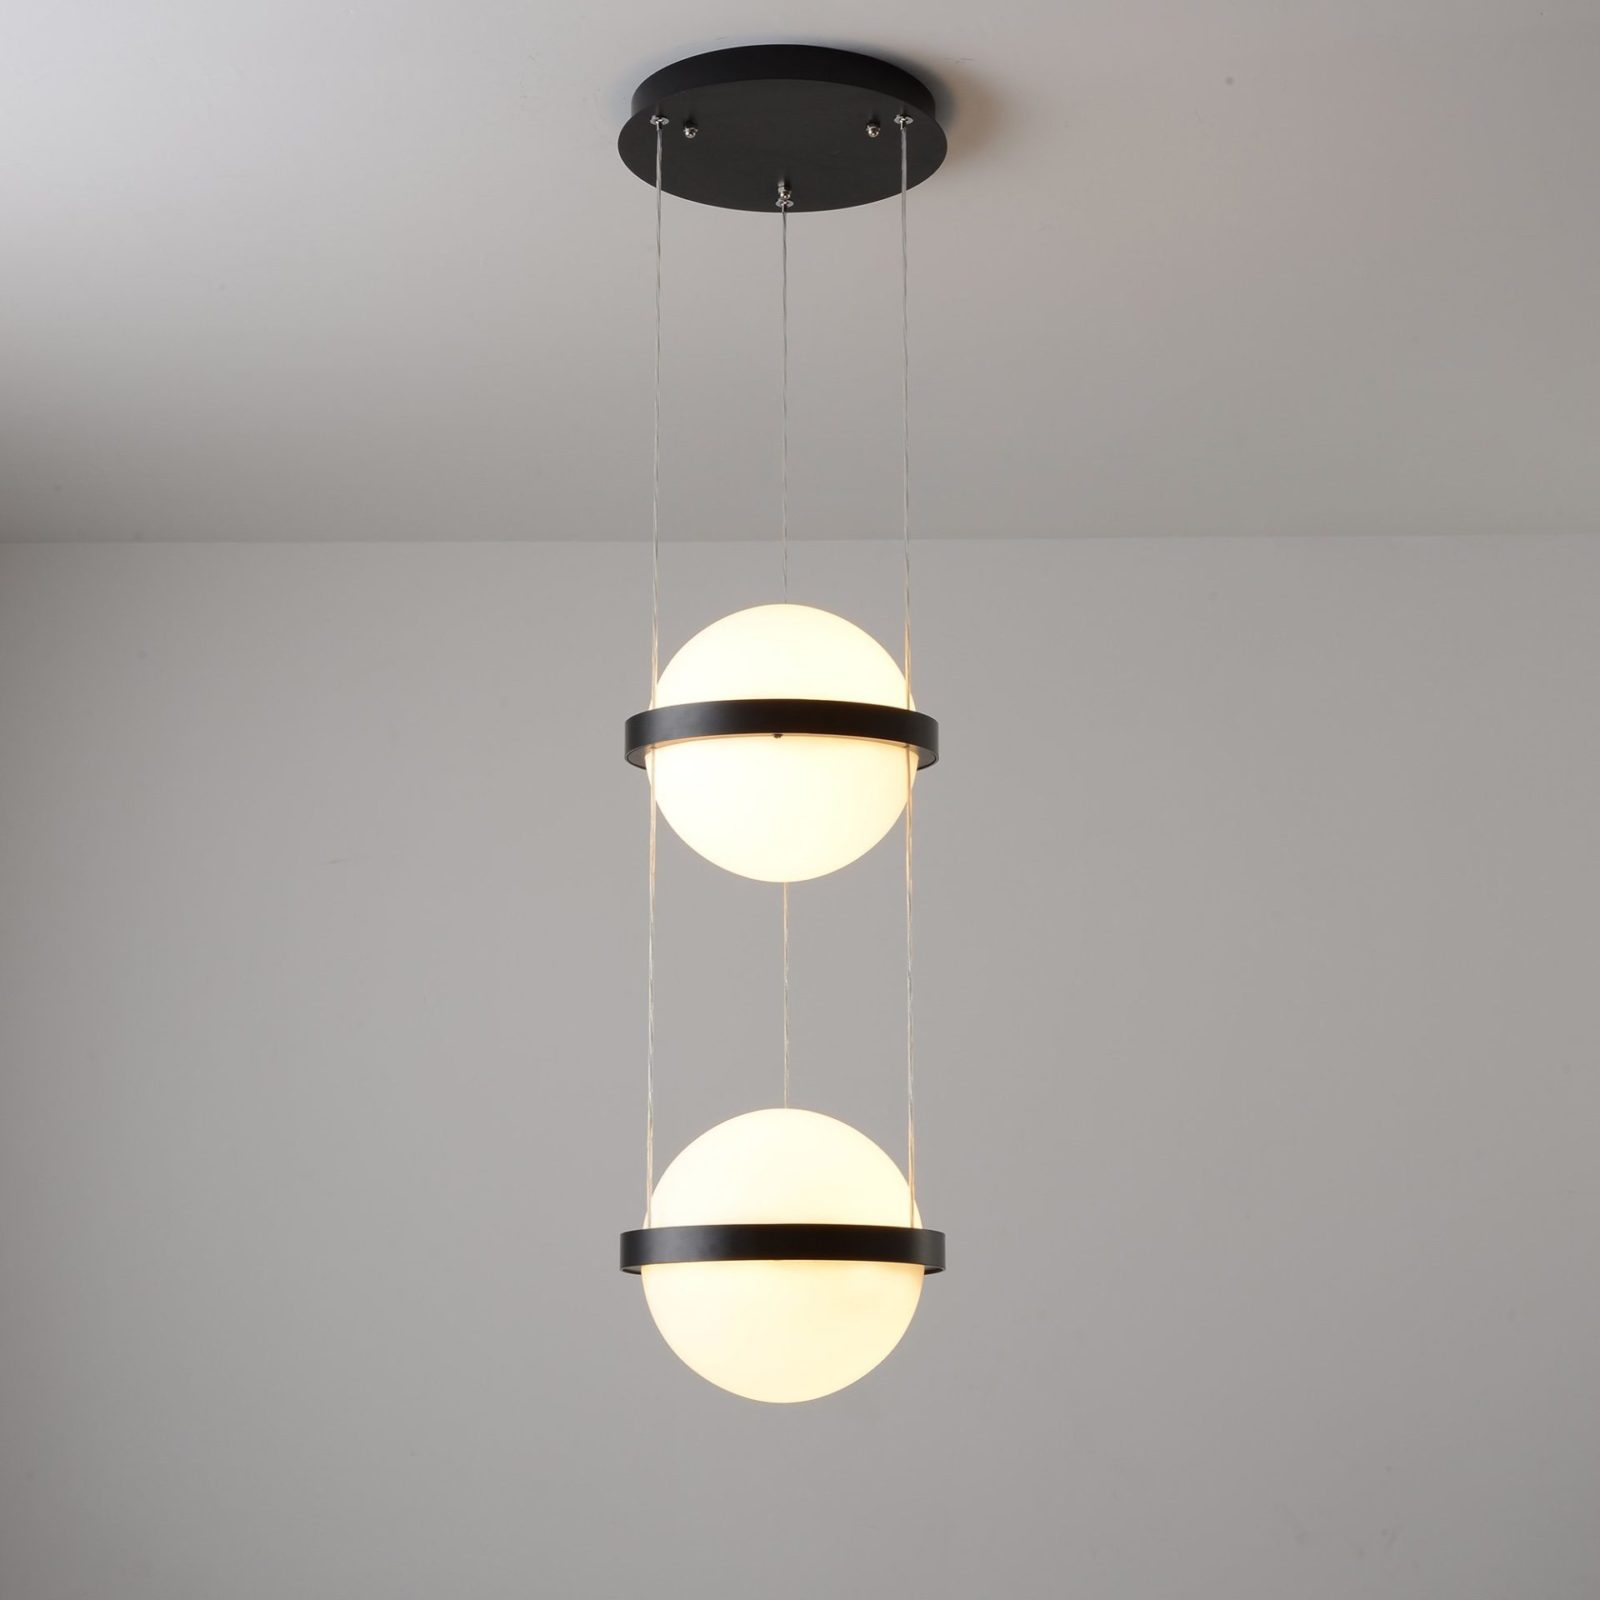 Дизайнерский подвесной светильник PALMA by Romatti